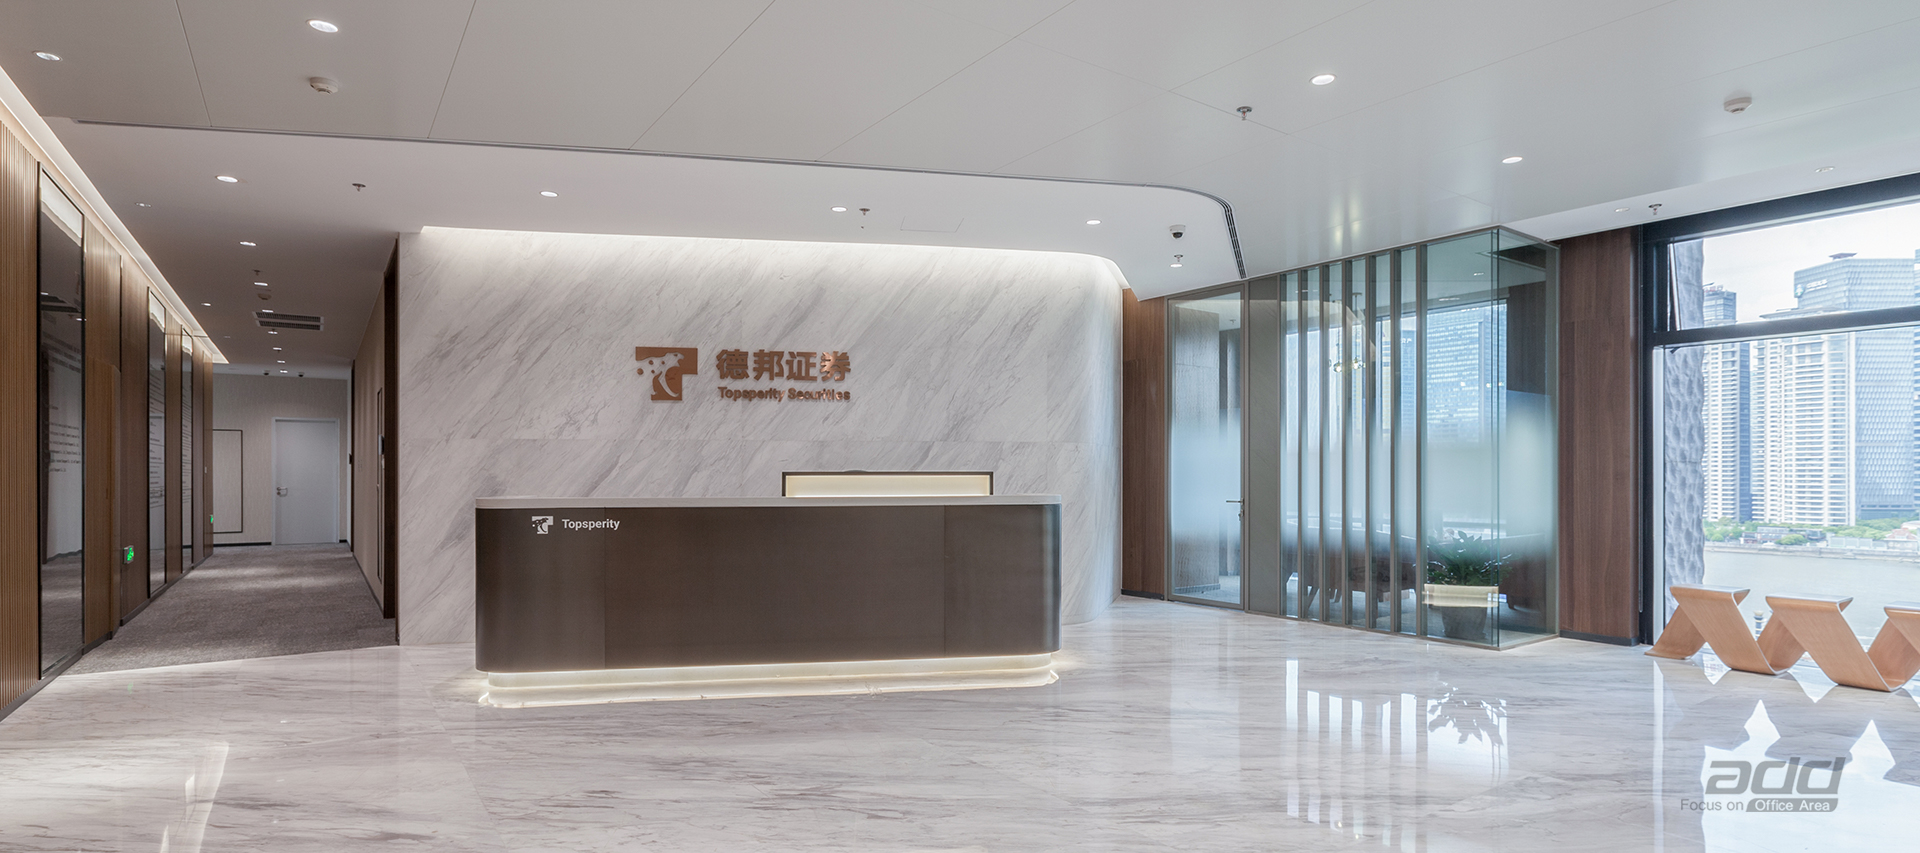 德邦證券辦公樓裝修設計-前廳-pc